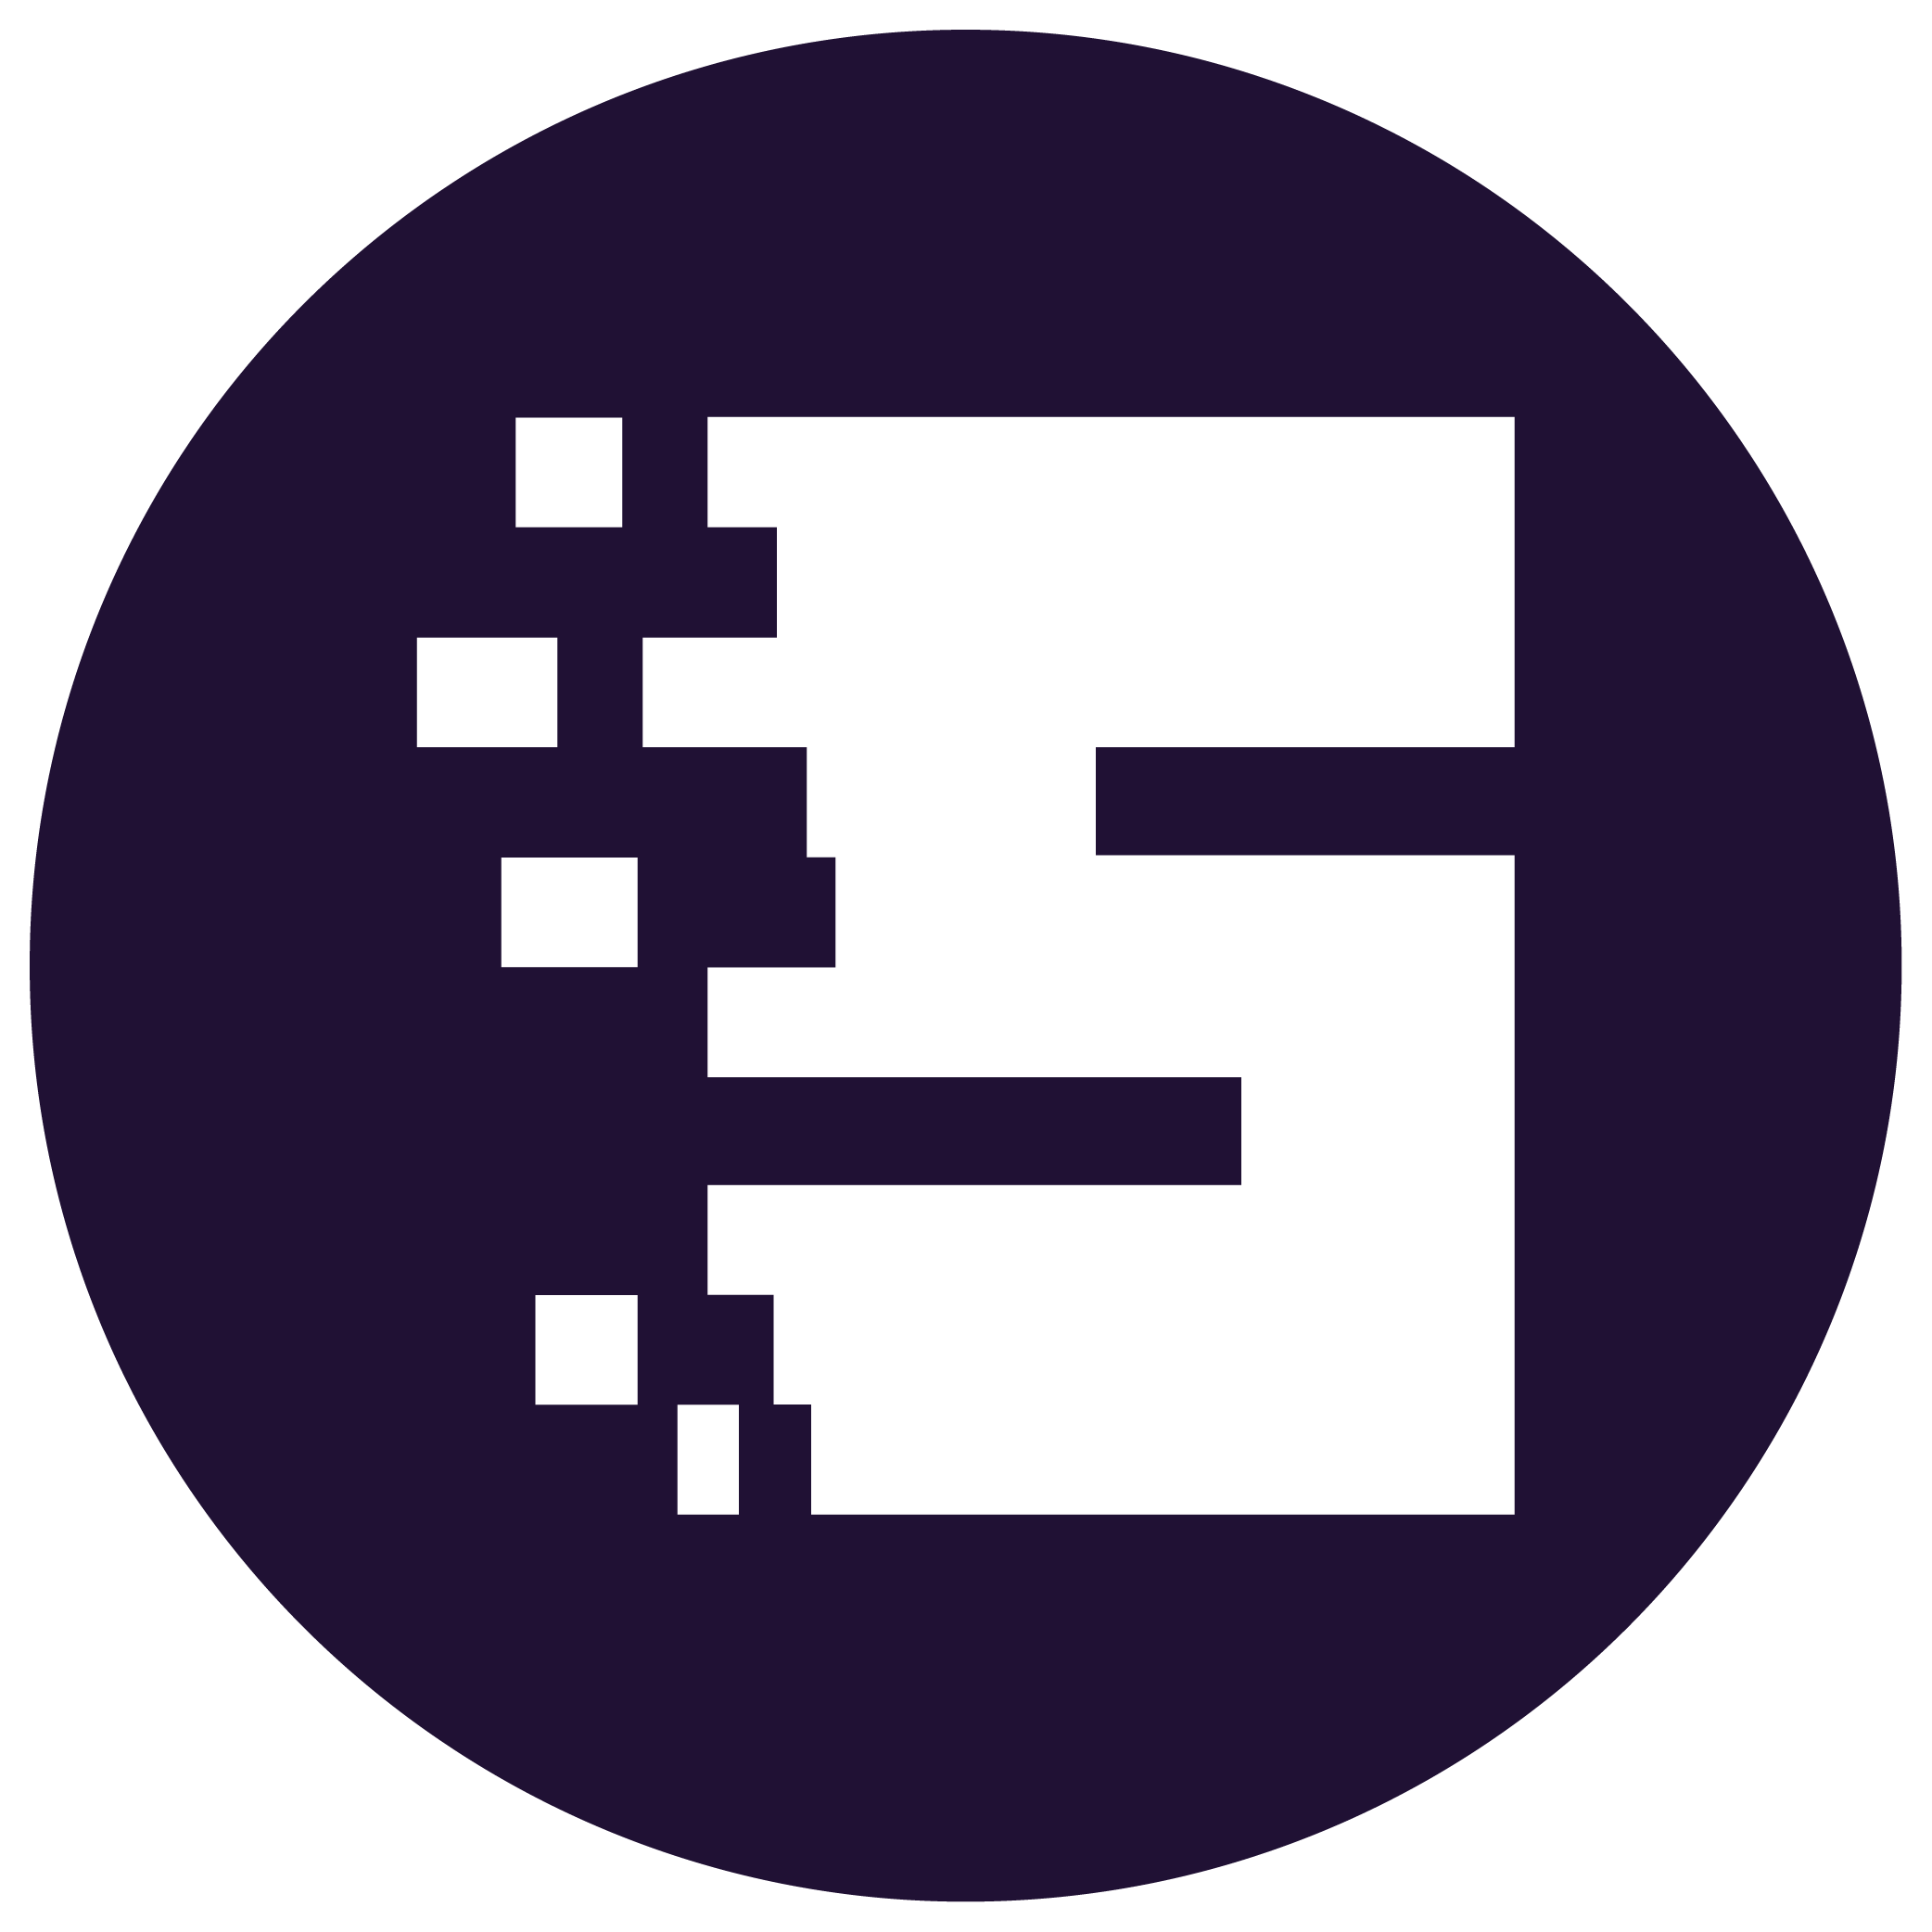 Stealthgram logo